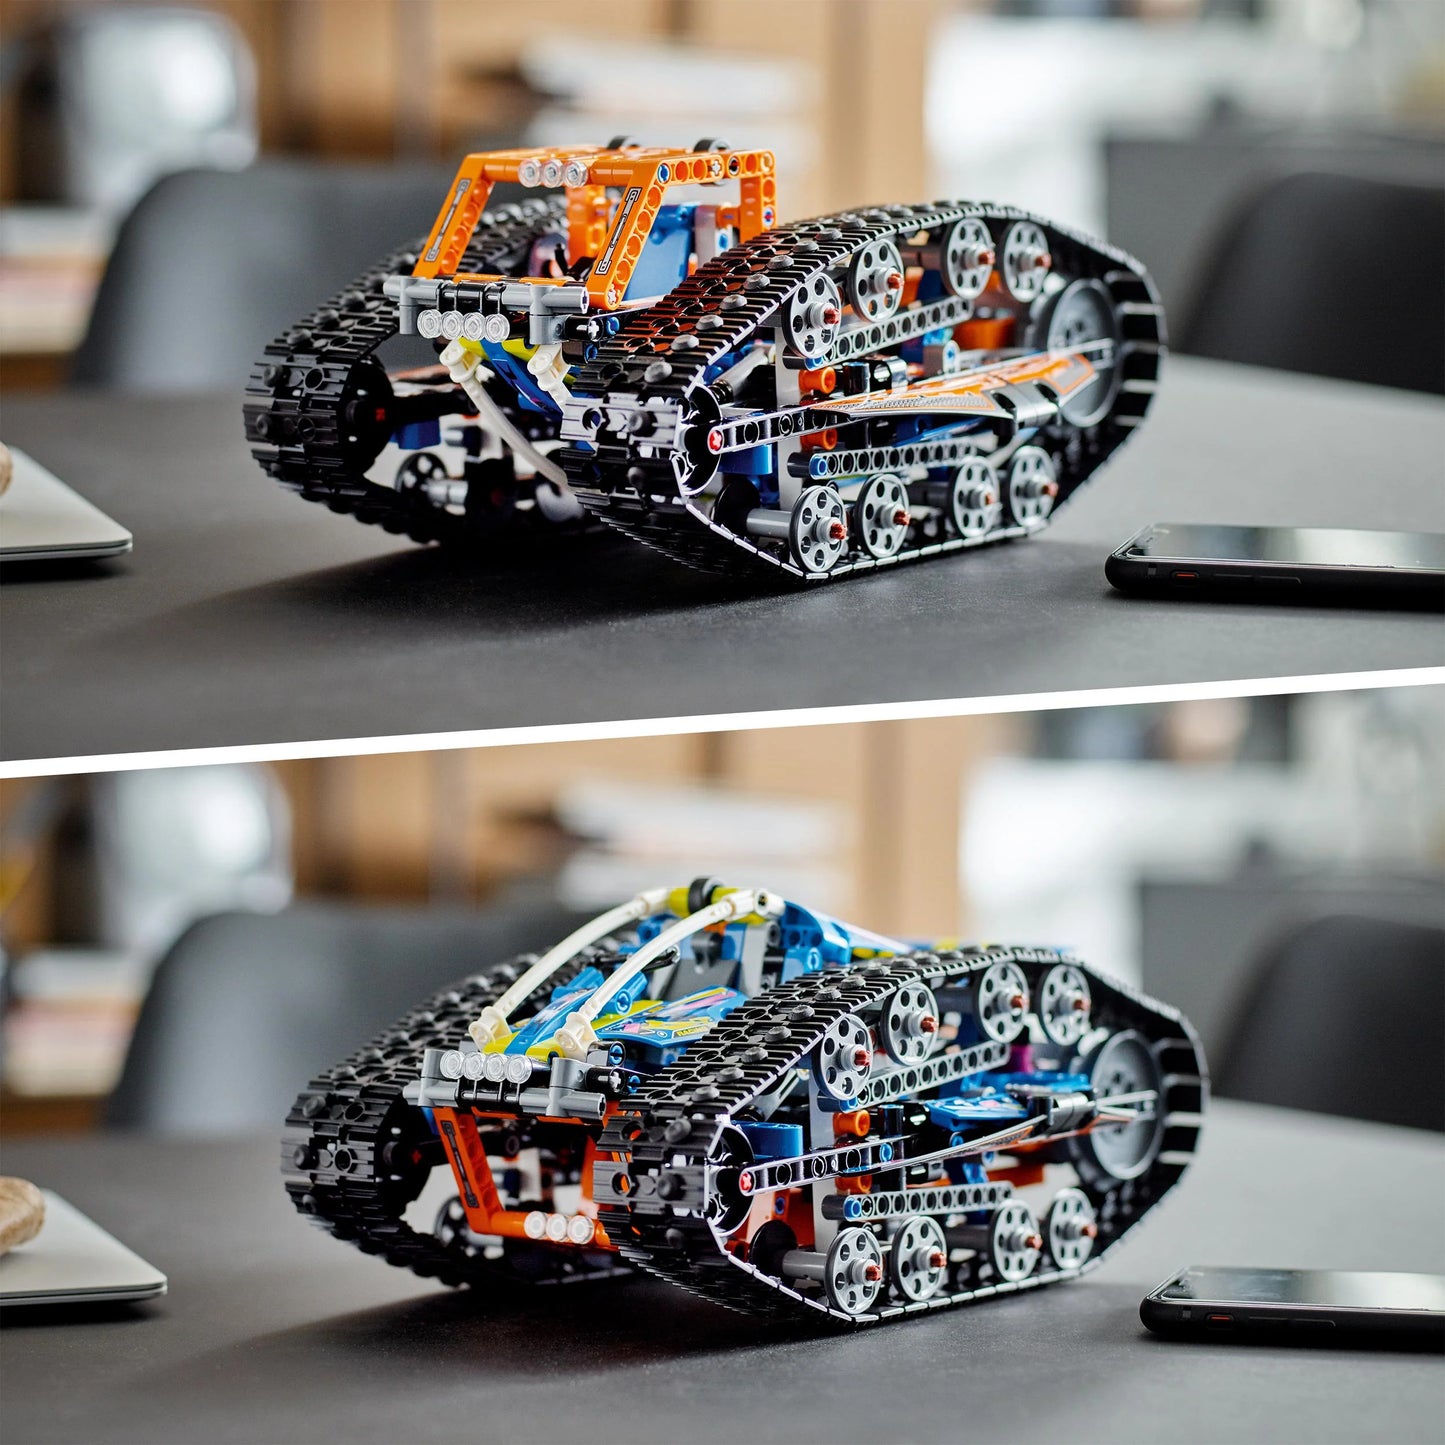 Transformatievoertuig met app-besturing-LEGO Technic